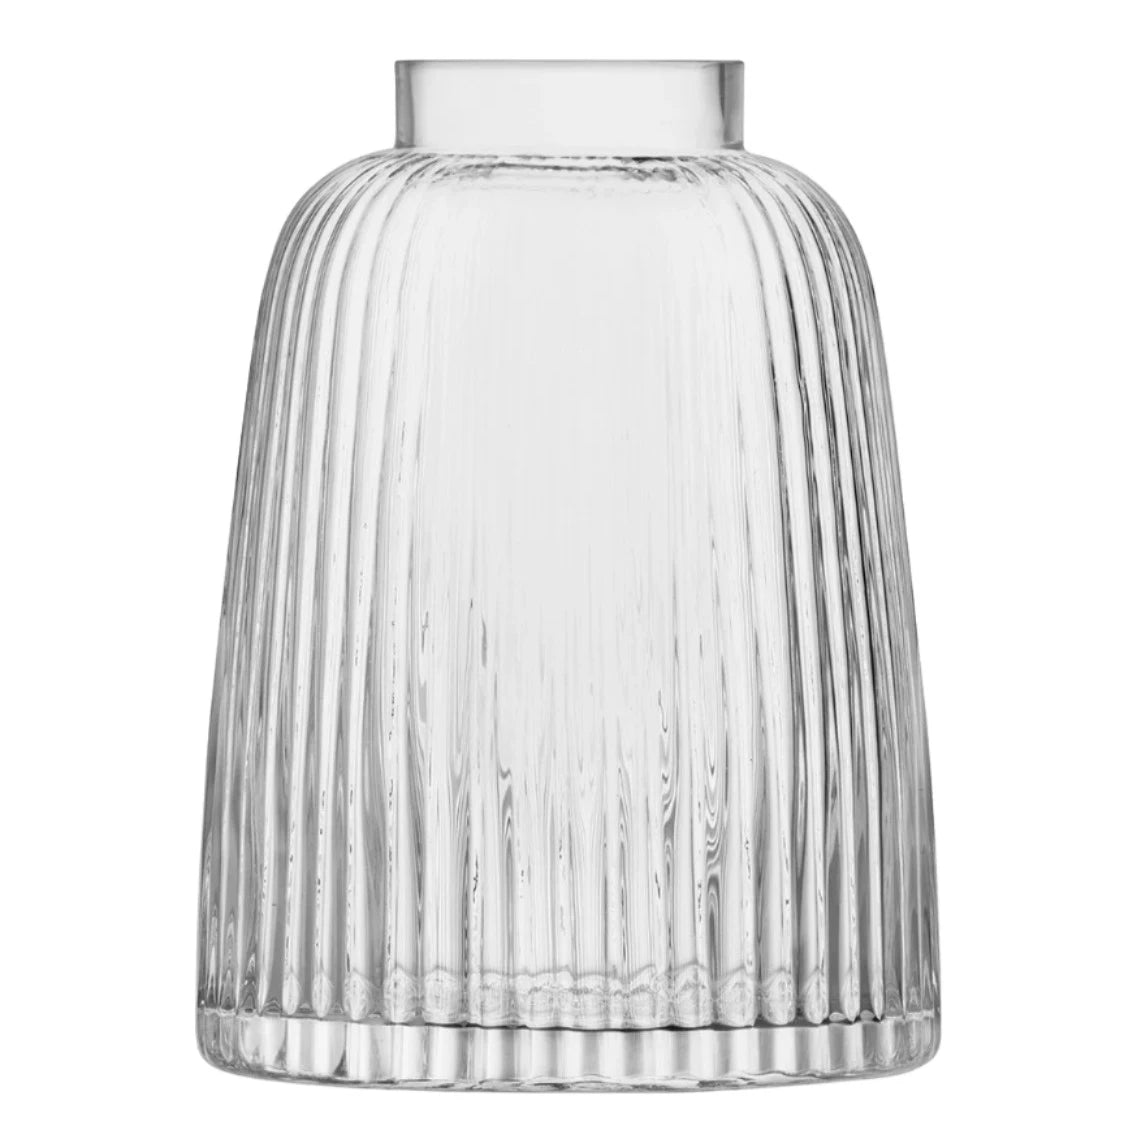 LSA - Pleat Vase H26cm Clear